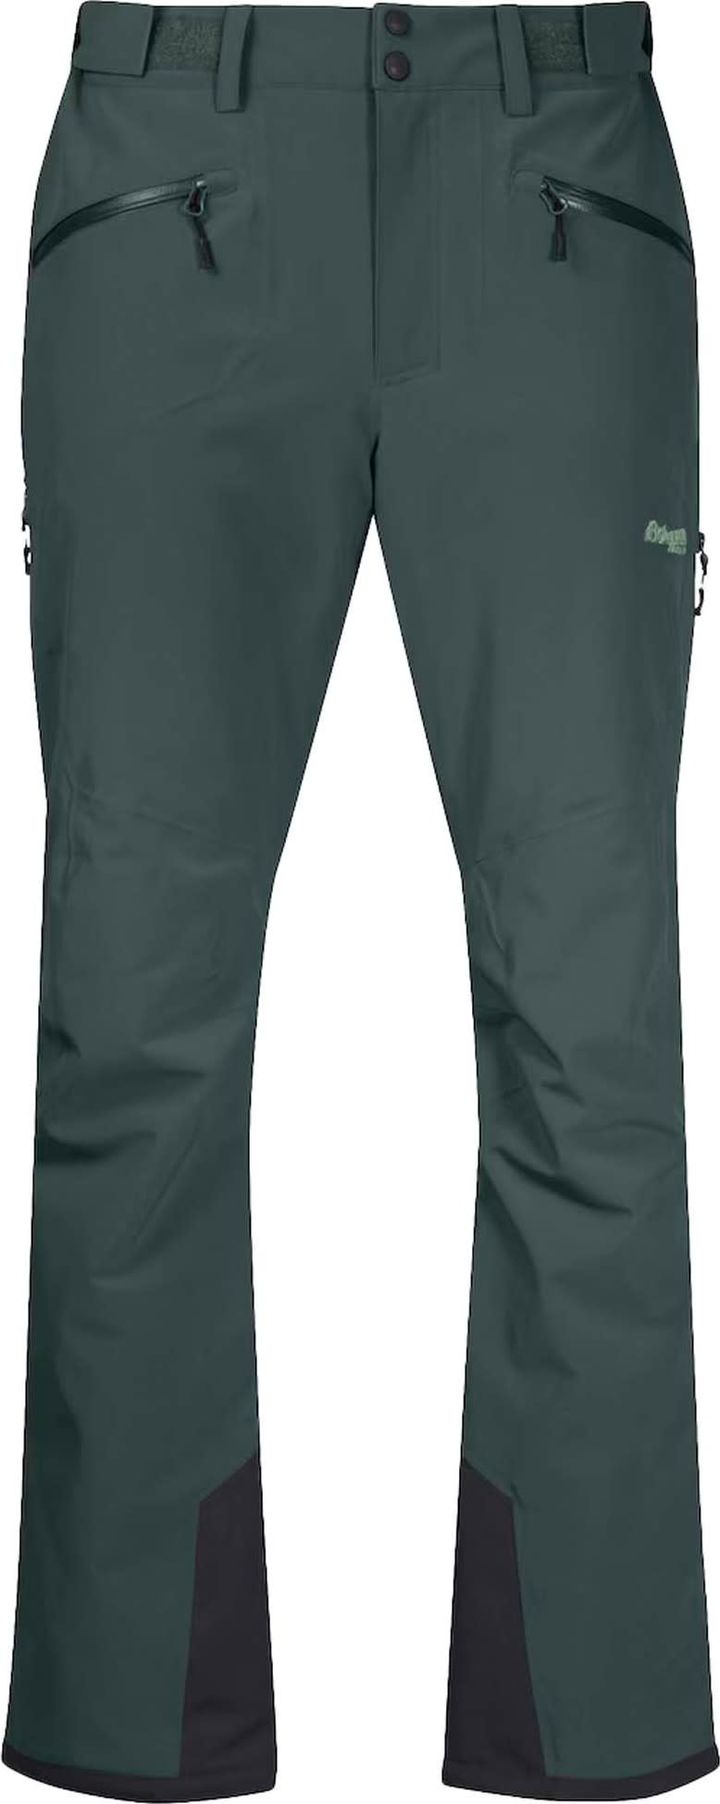 Men's Oppdal Insulated Pants Duke Green Bergans